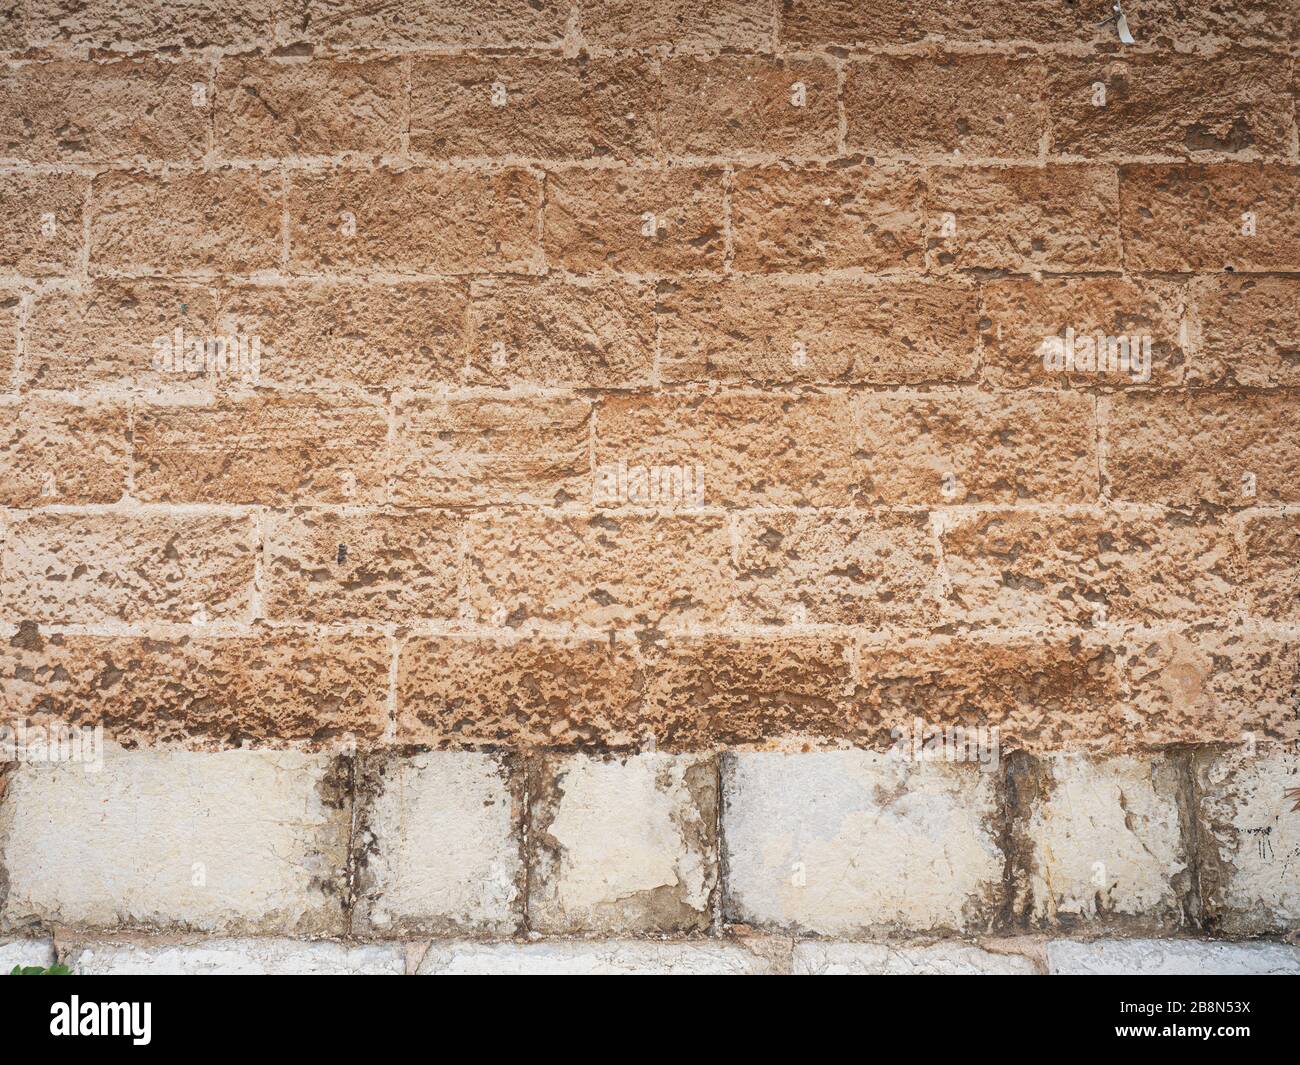 Mur en marbre poney sur les blocs de grès de base et le pavé, bâtiment fait avec des blocs de pierre, contre le ciel bleu. Palma de Majorque Banque D'Images